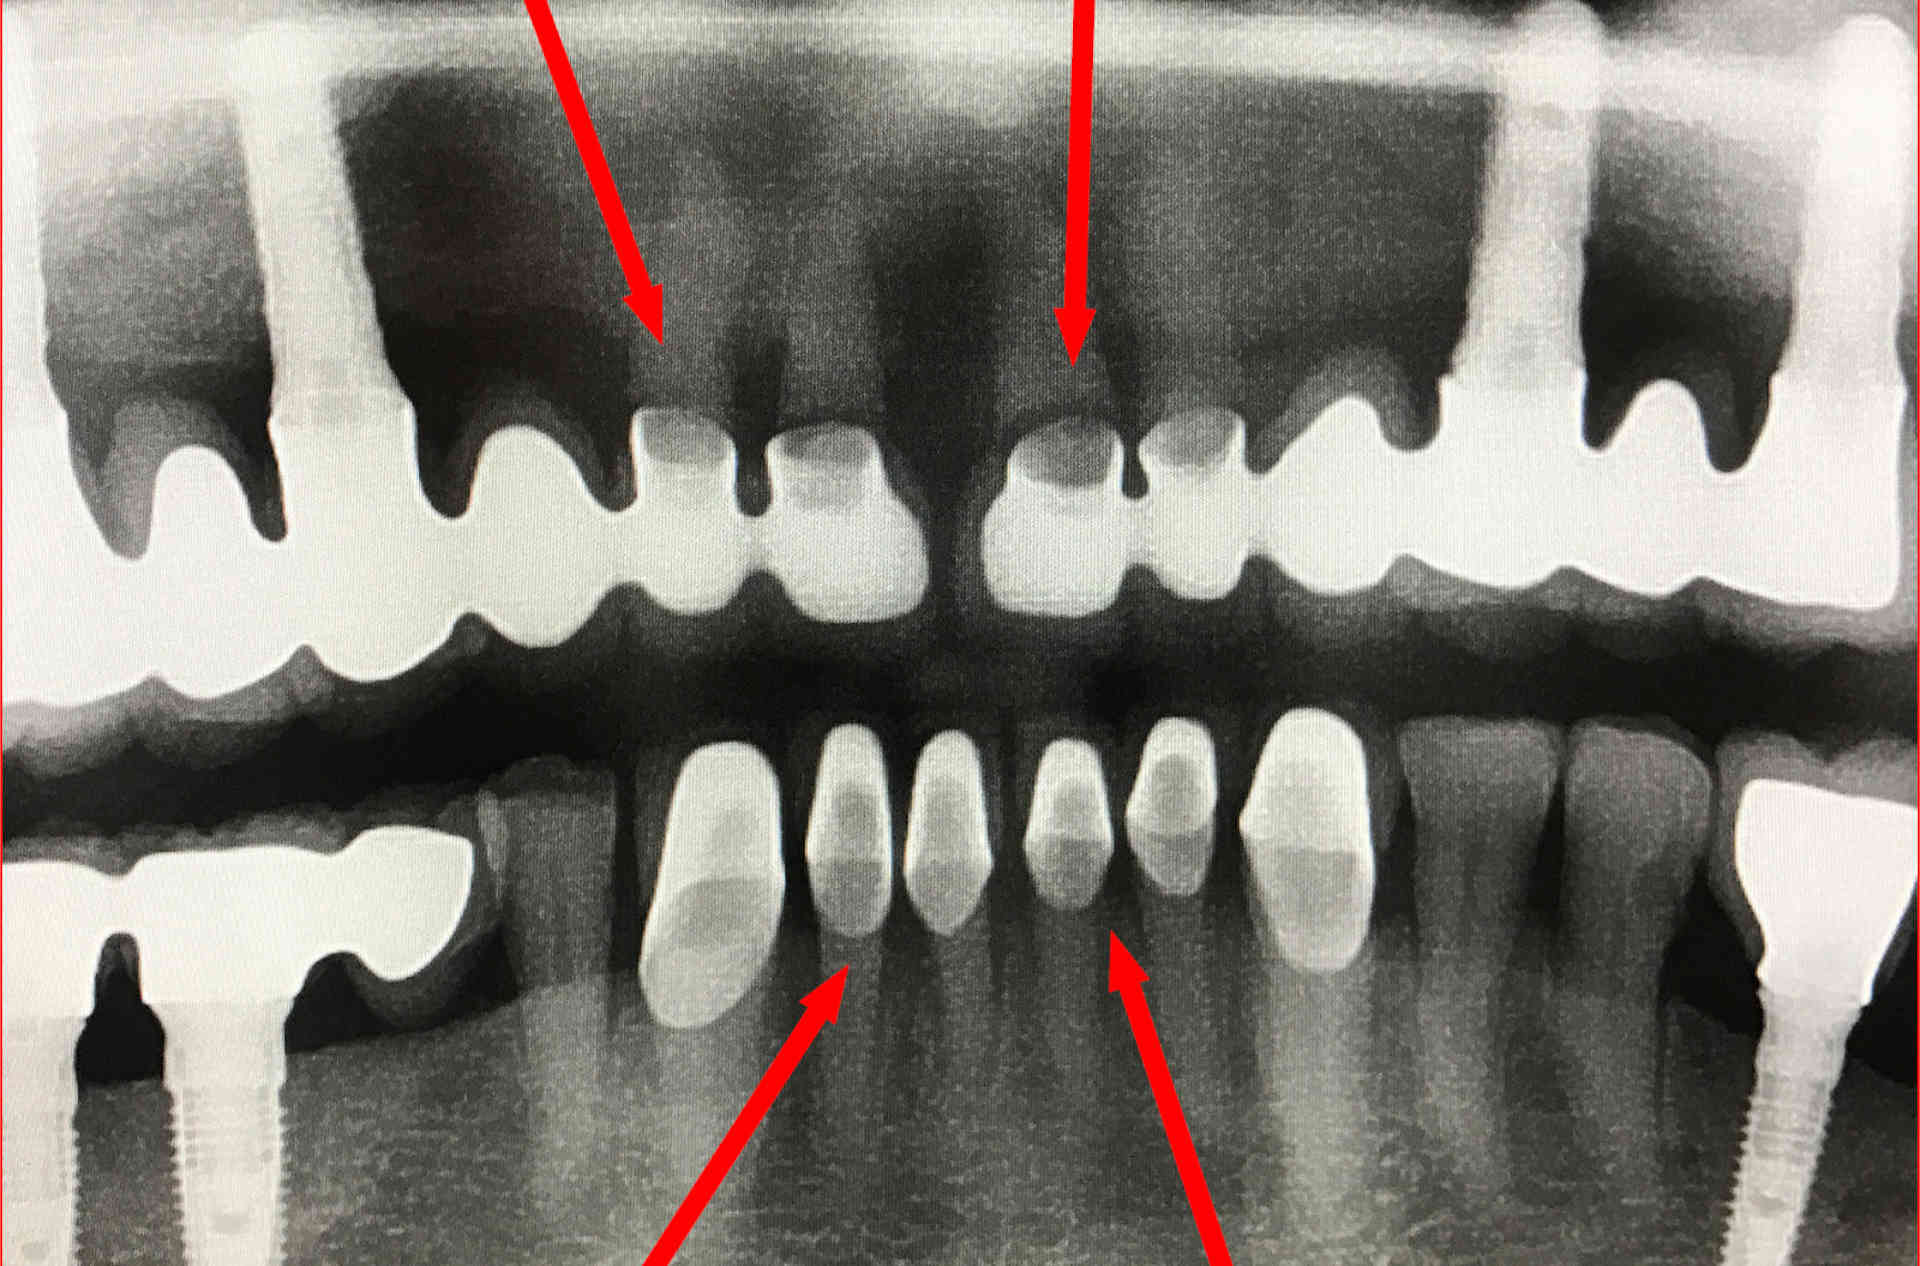 Röntgenbild einer verpfuschten Zahnbehandlung im Ausland